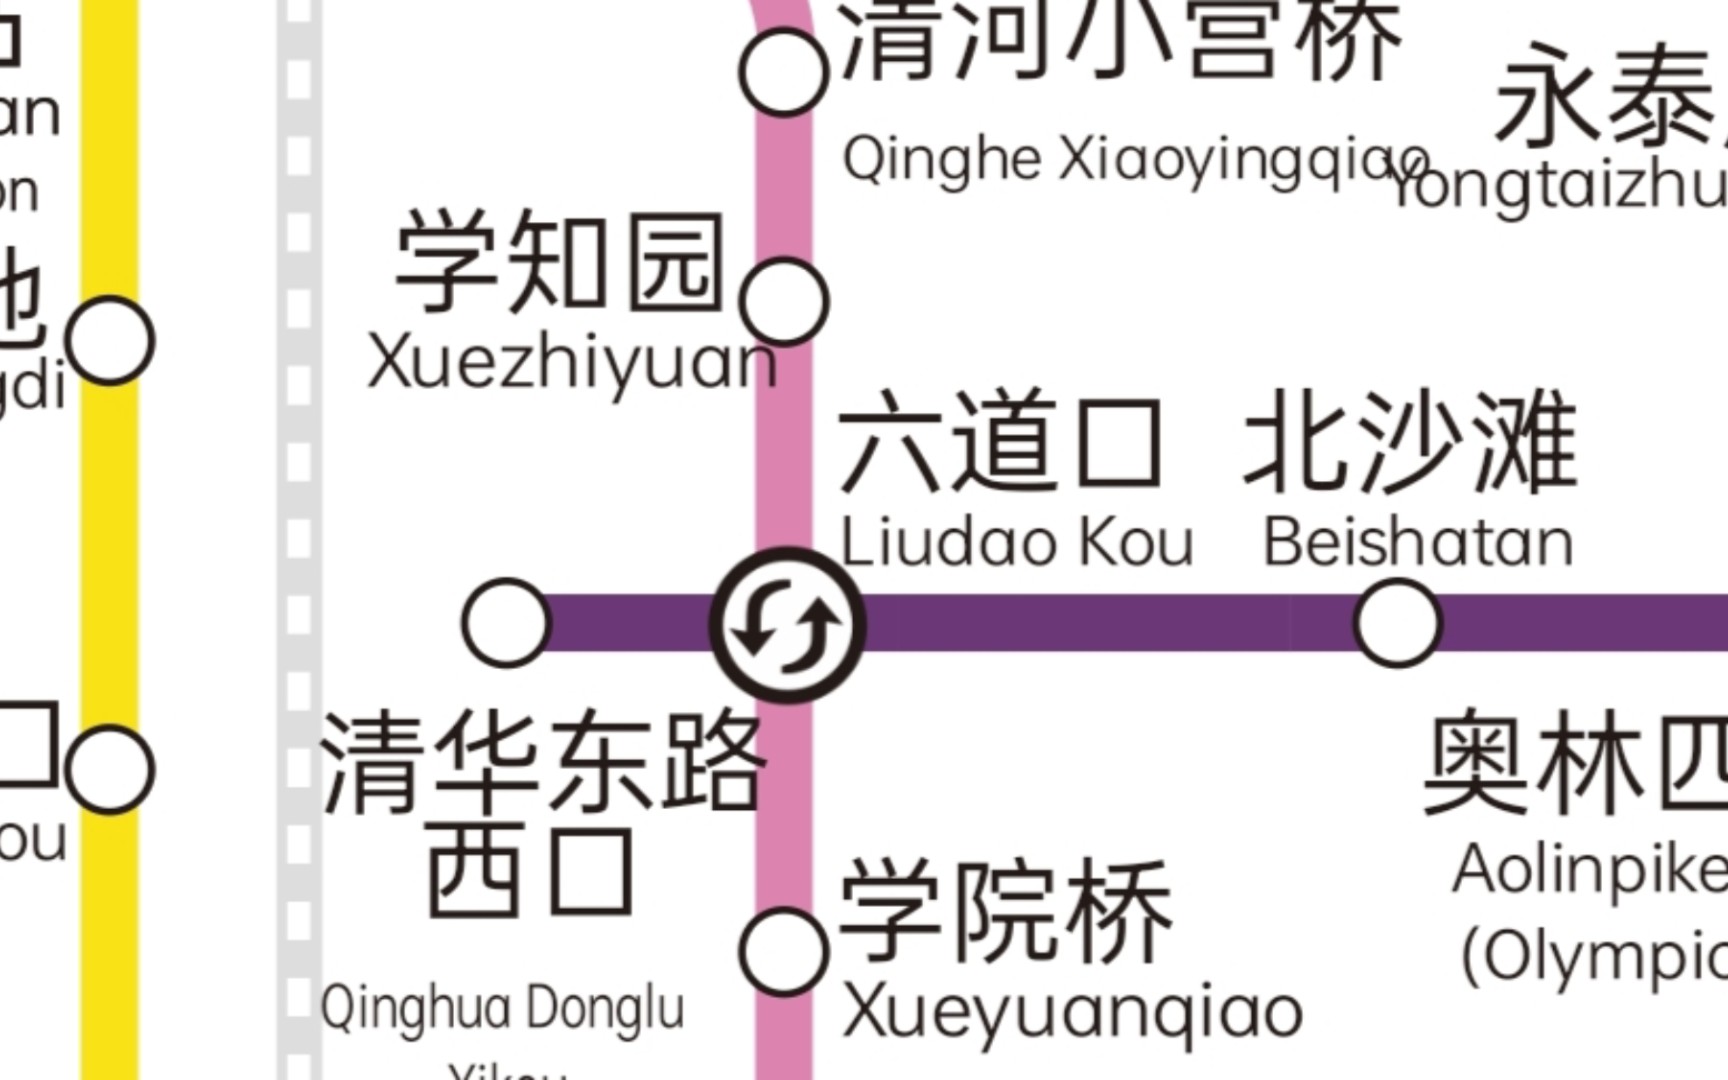 【北京地铁】六道口站昌平线换乘15号线测速 用时约三分钟